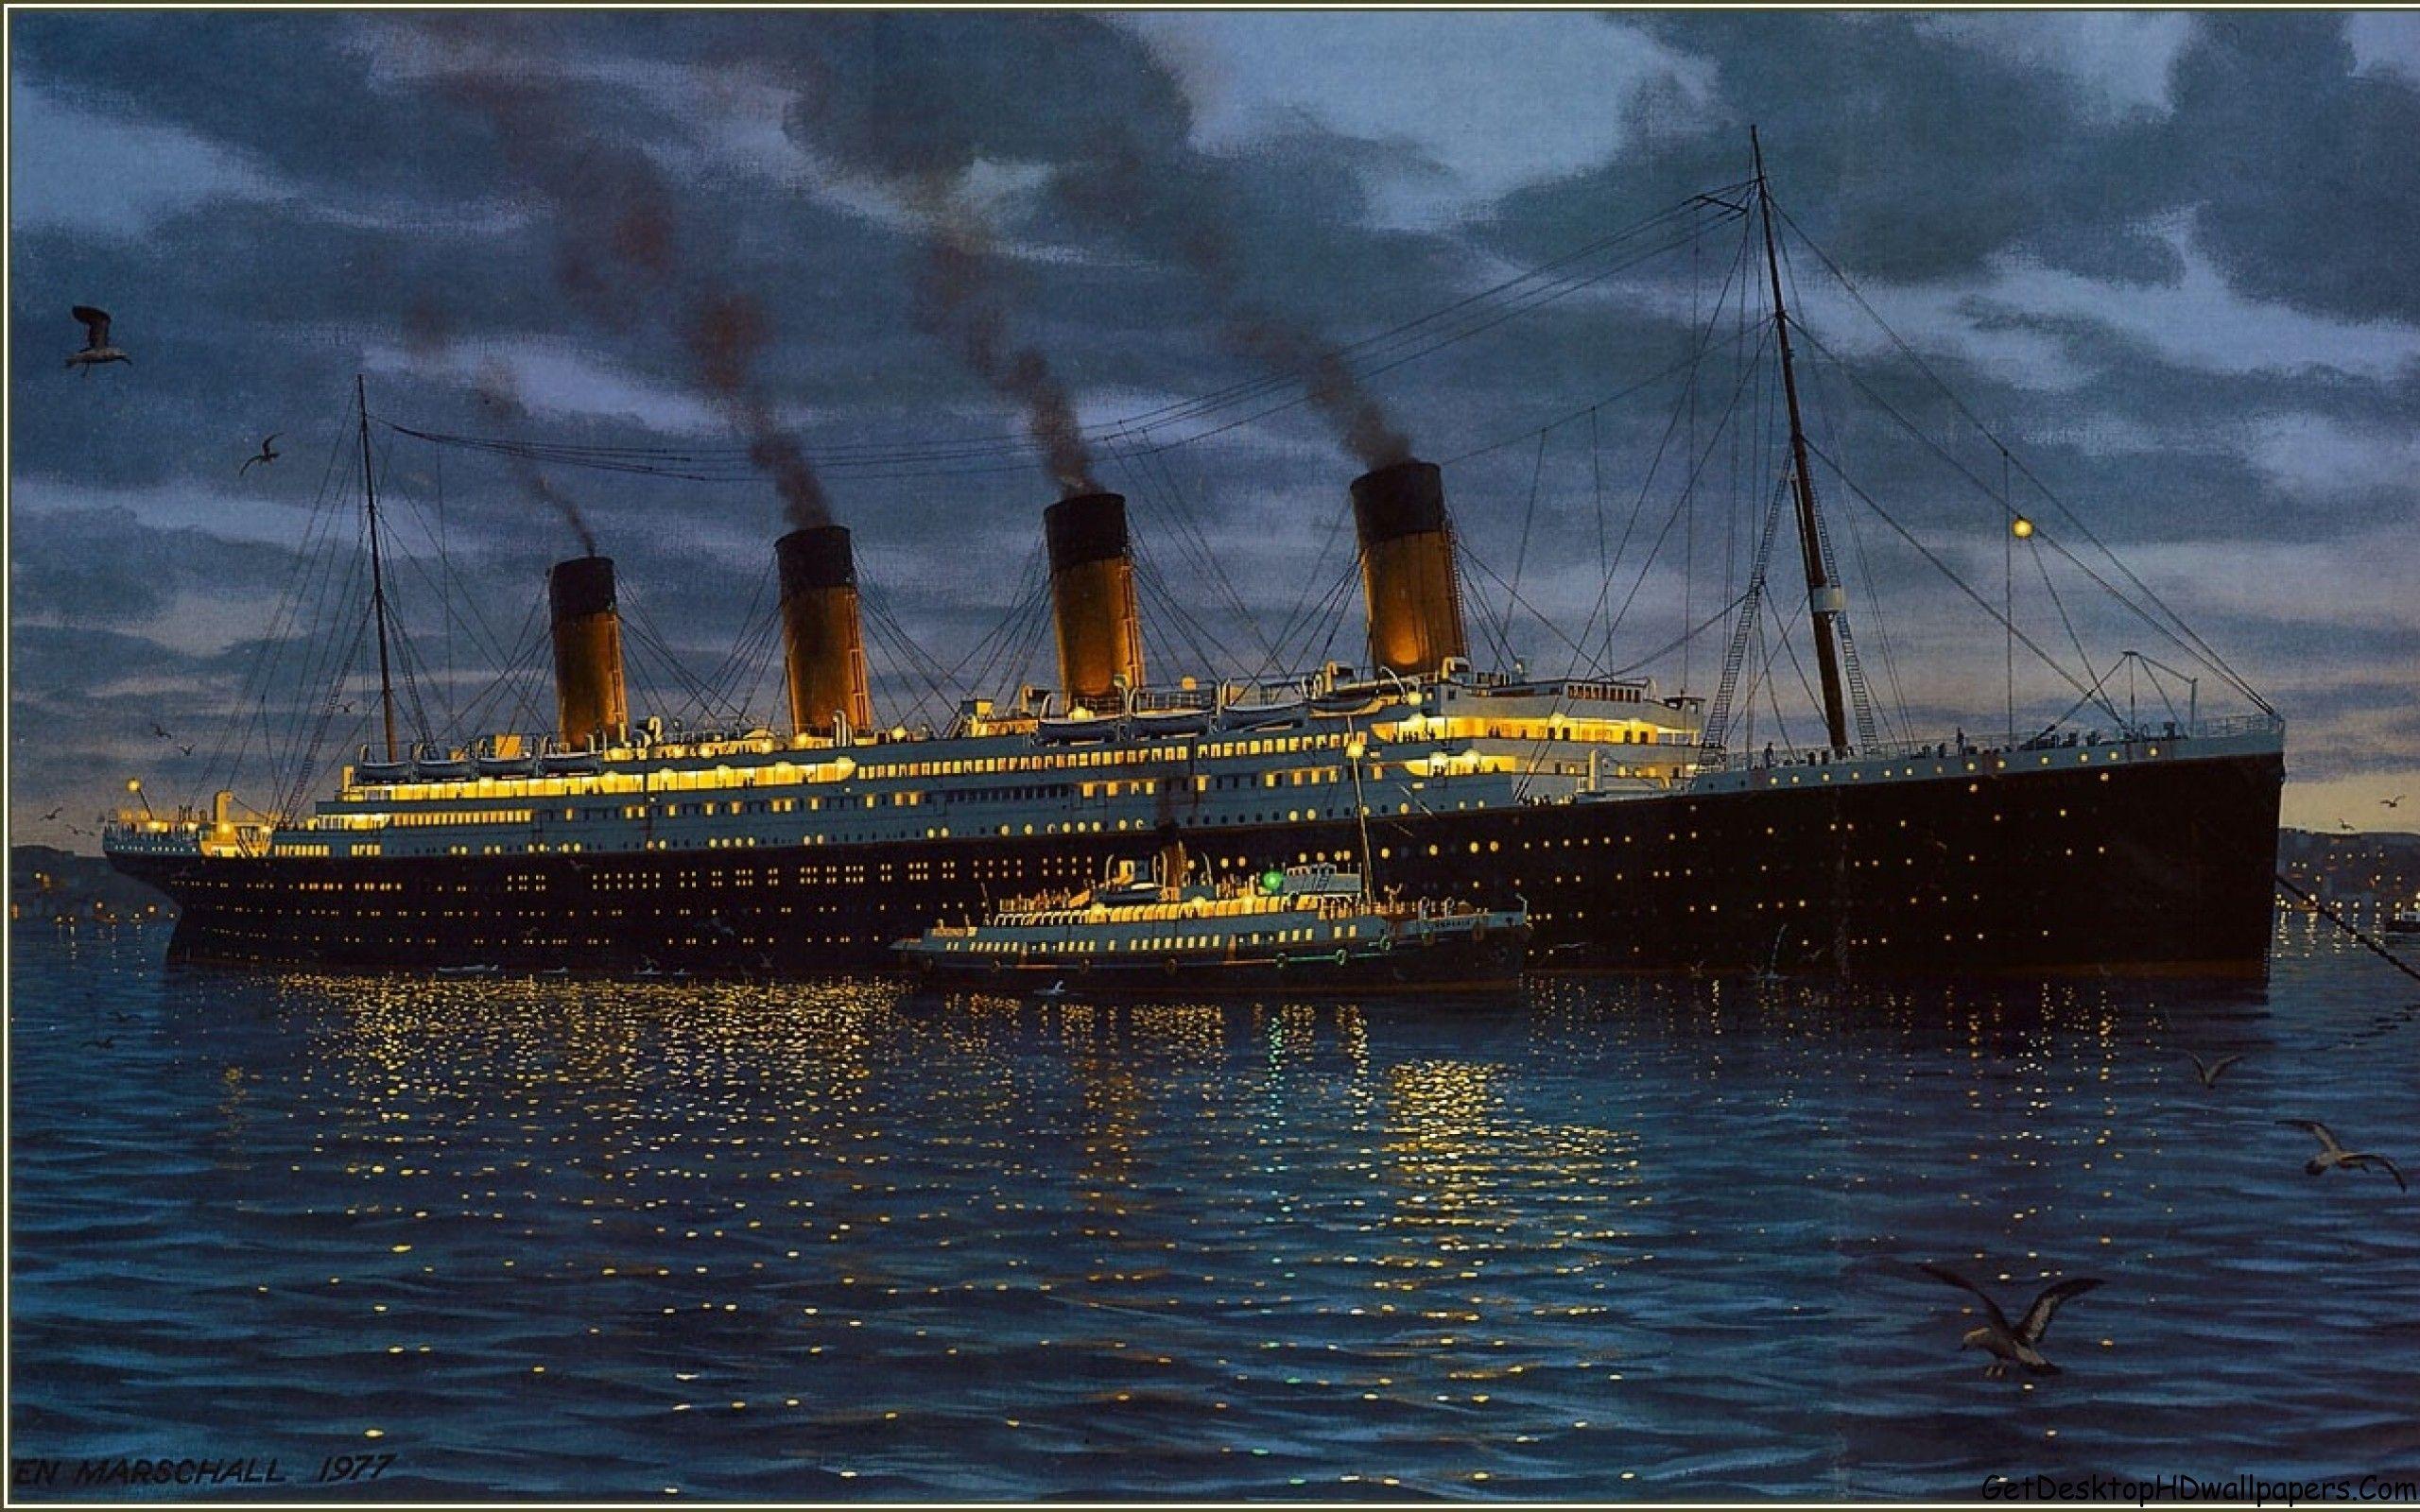 Titanic Wallpaper For Desktop